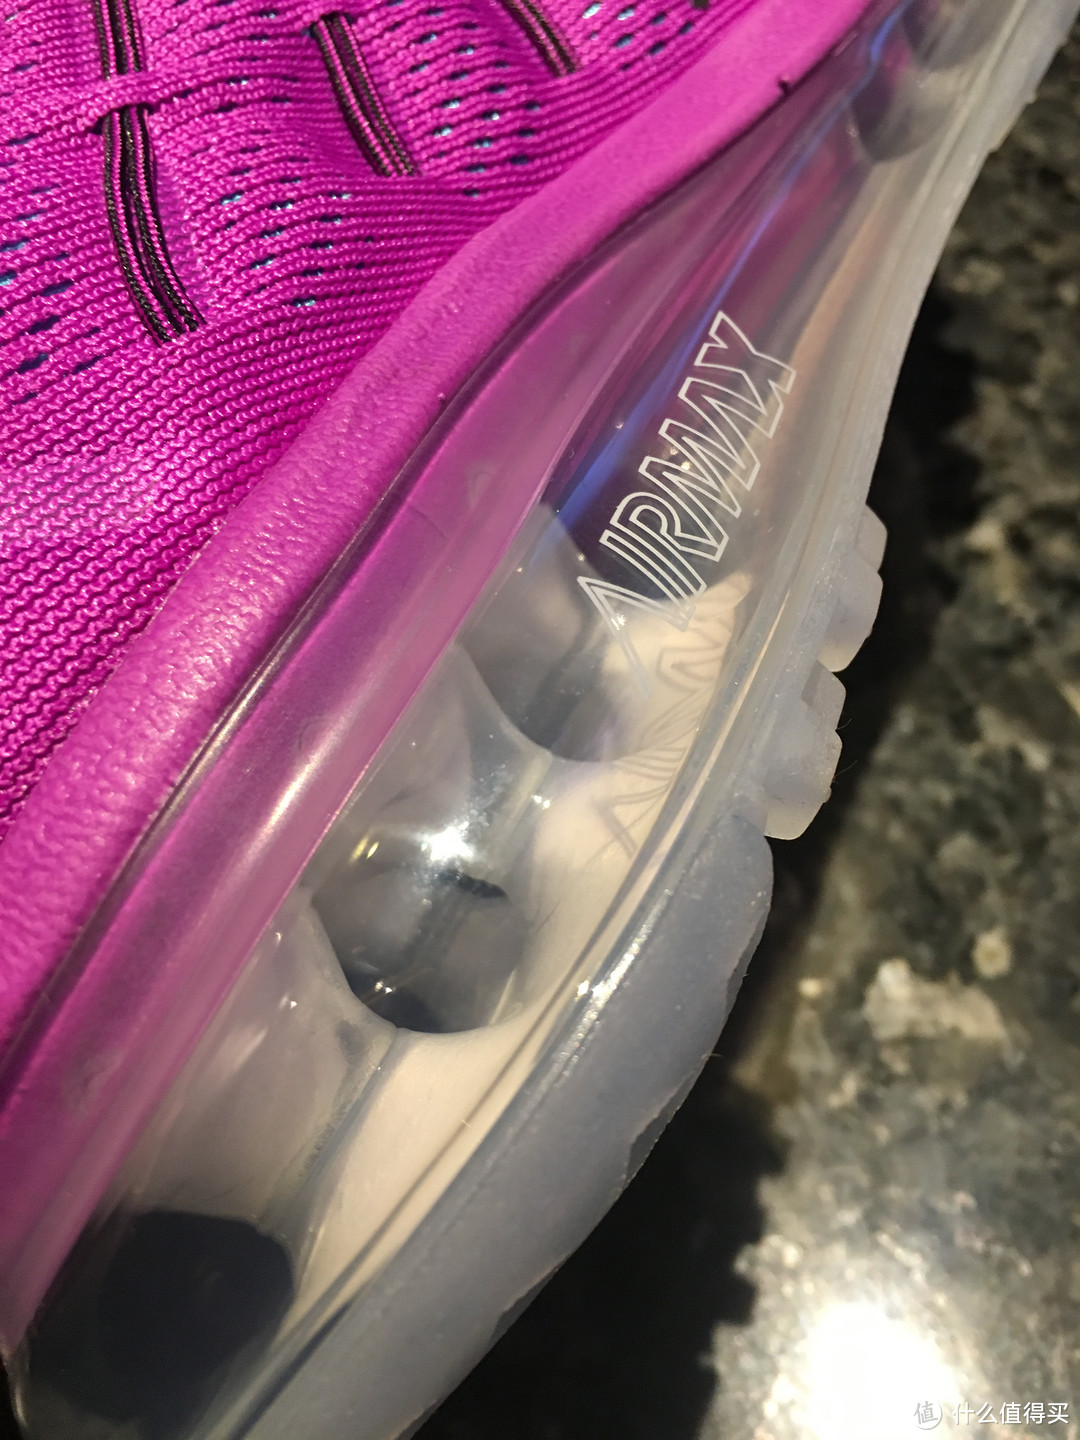 Nike 耐克 Air Max 2016全掌可视气垫型运动跑鞋开箱及评测